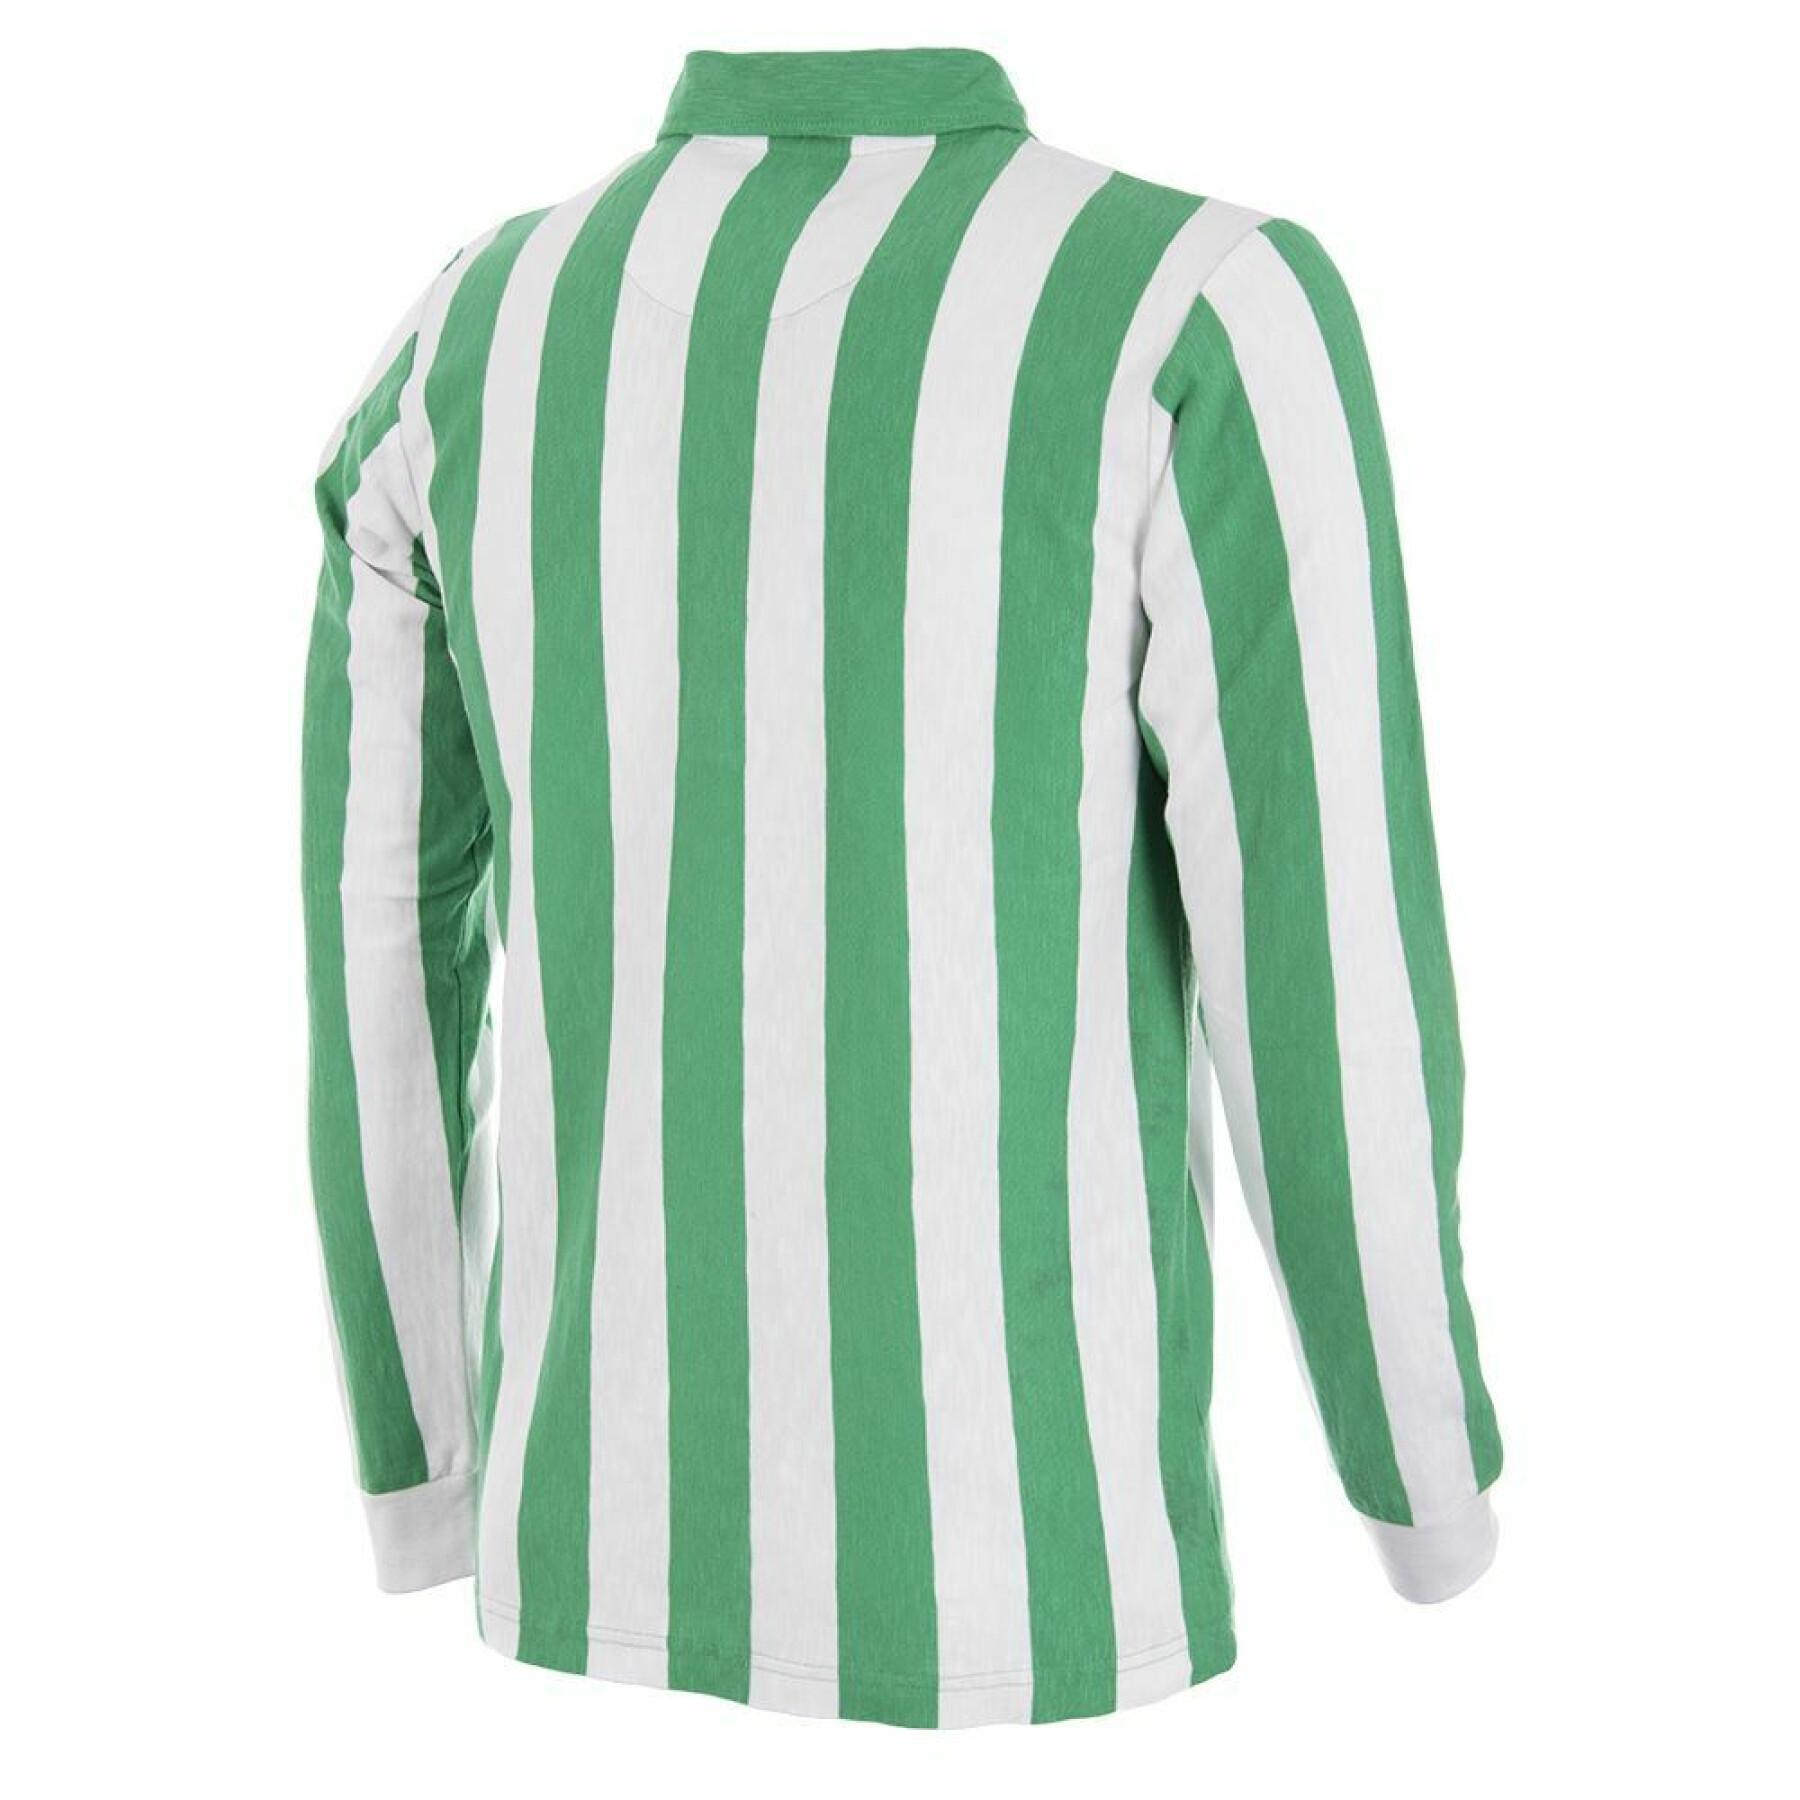 Koszulka Real Betis Seville 1934/35